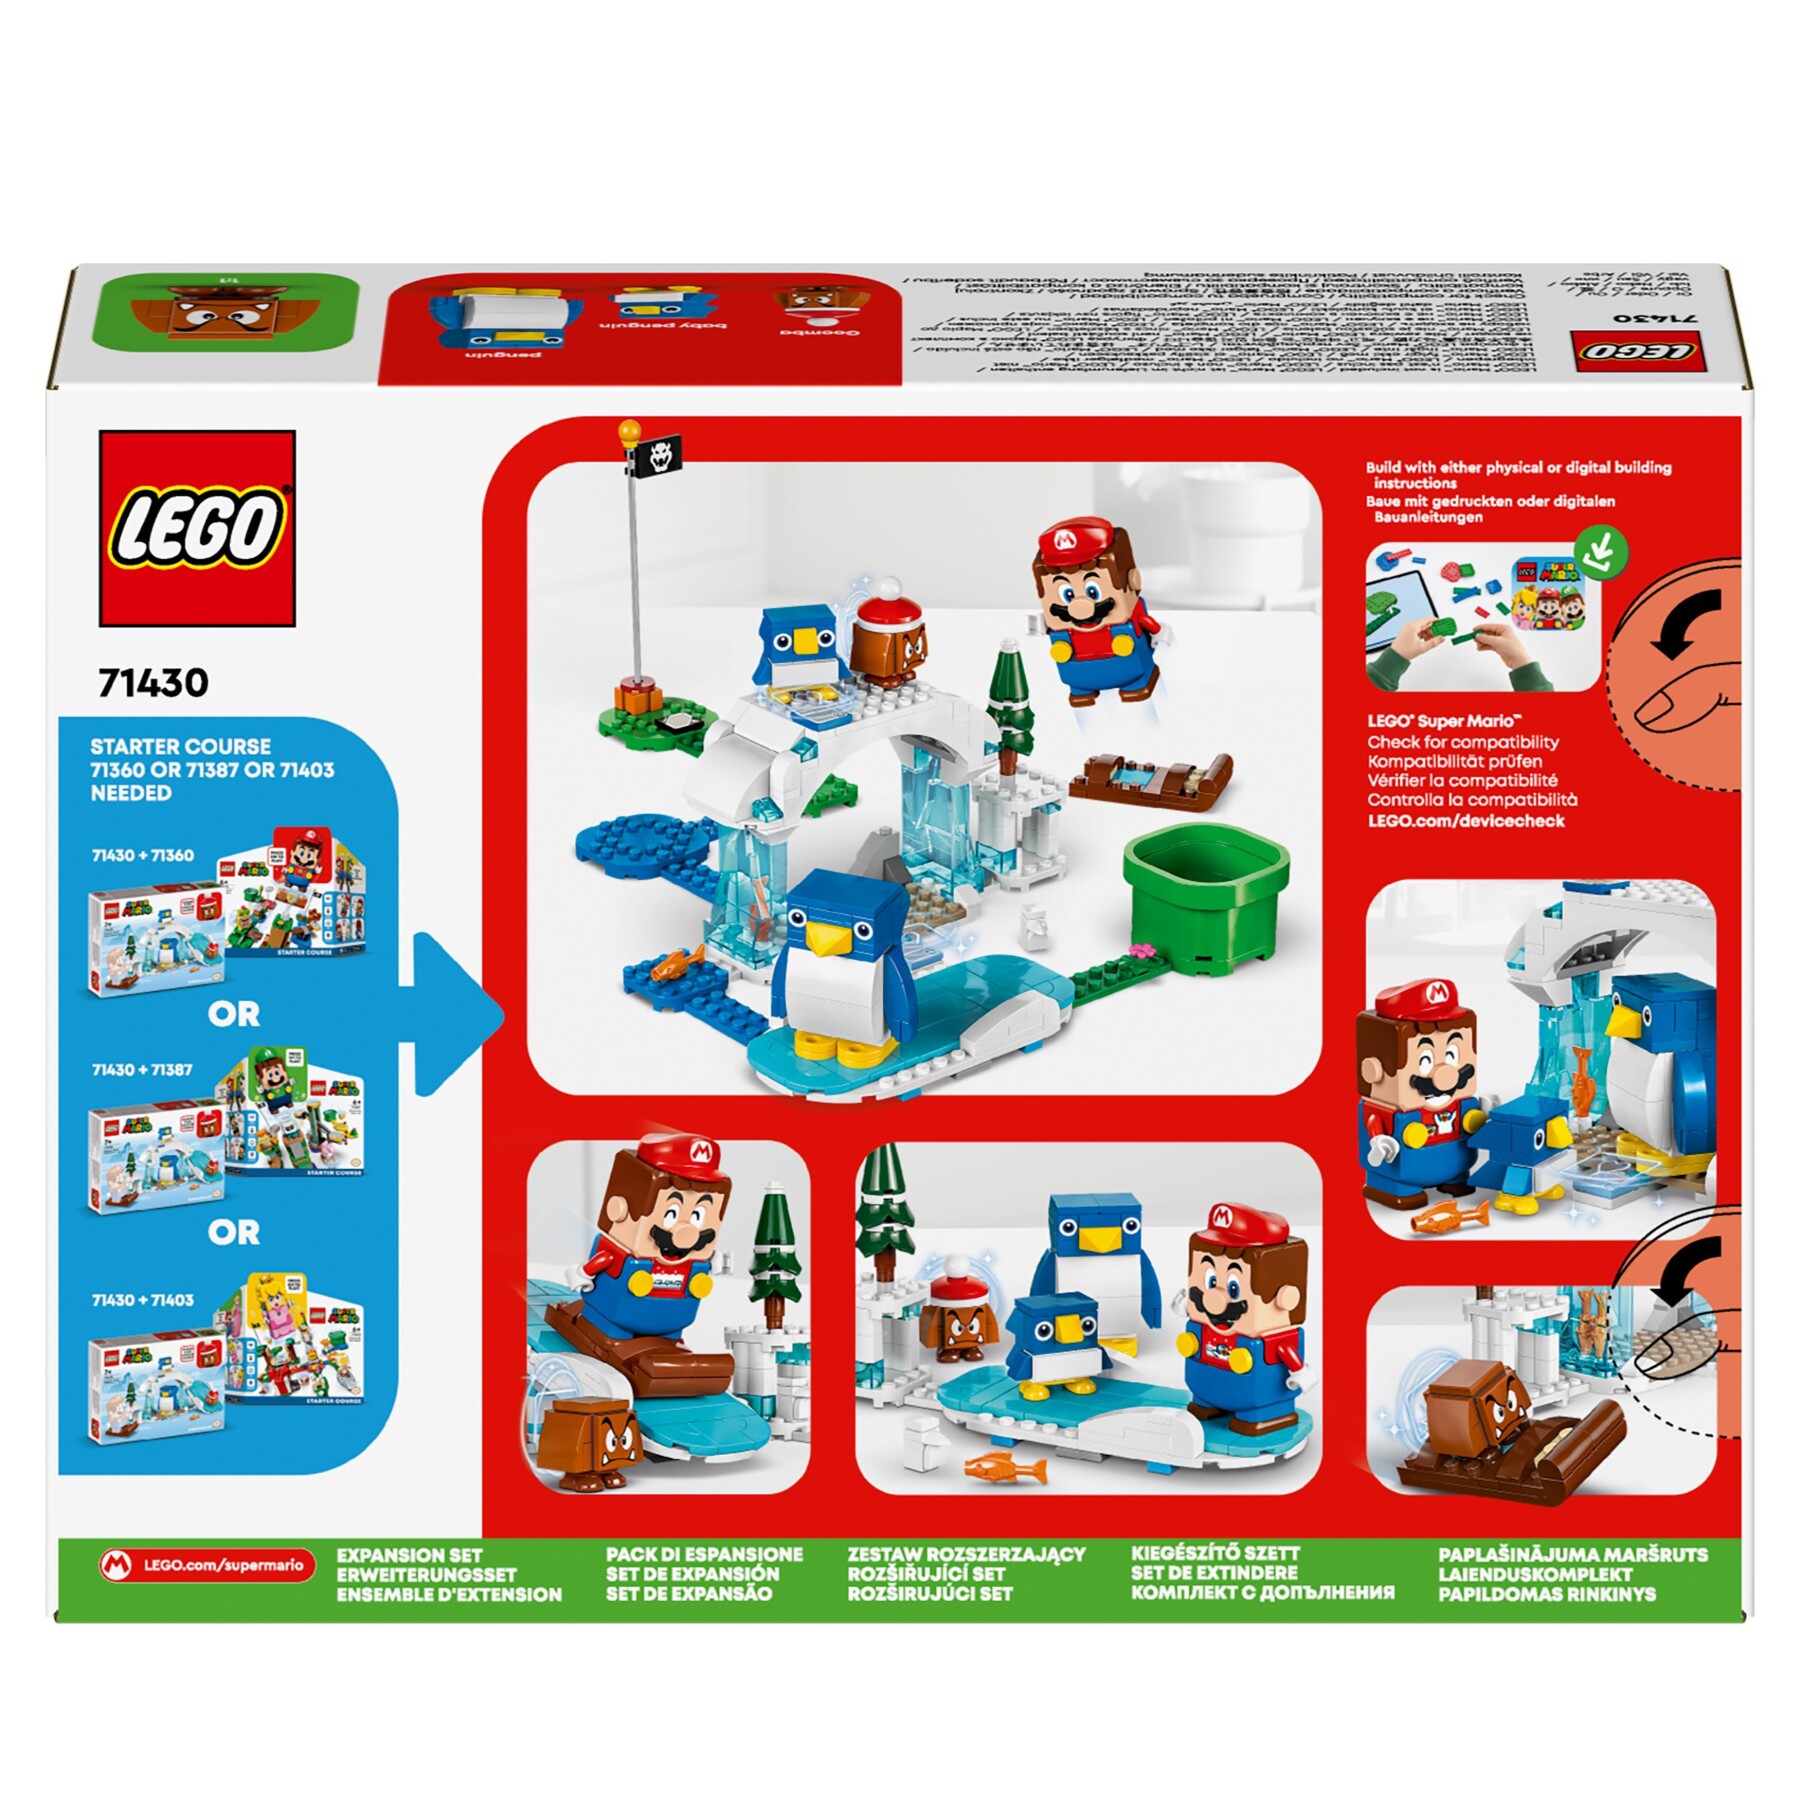 Lego super mario 71430 pack di espansione la settimana bianca della famiglia pinguotto, giochi per bambini 7+ con 3 personaggi - LEGO® Super Mario™, Super Mario